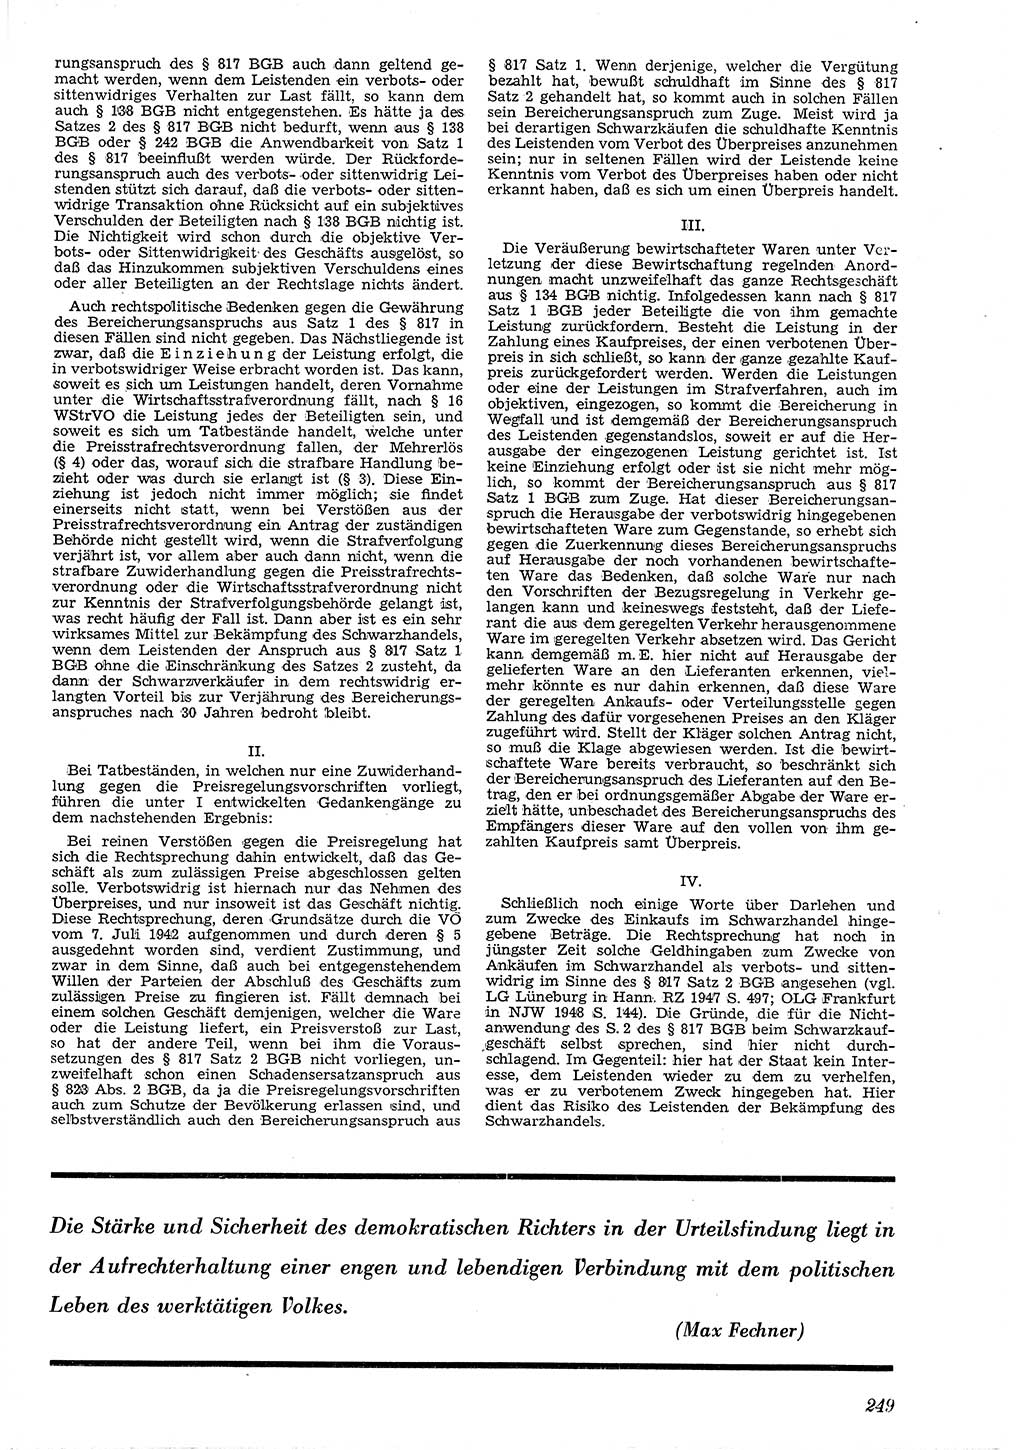 Neue Justiz (NJ), Zeitschrift für Recht und Rechtswissenschaft [Deutsche Demokratische Republik (DDR)], 4. Jahrgang 1950, Seite 249 (NJ DDR 1950, S. 249)